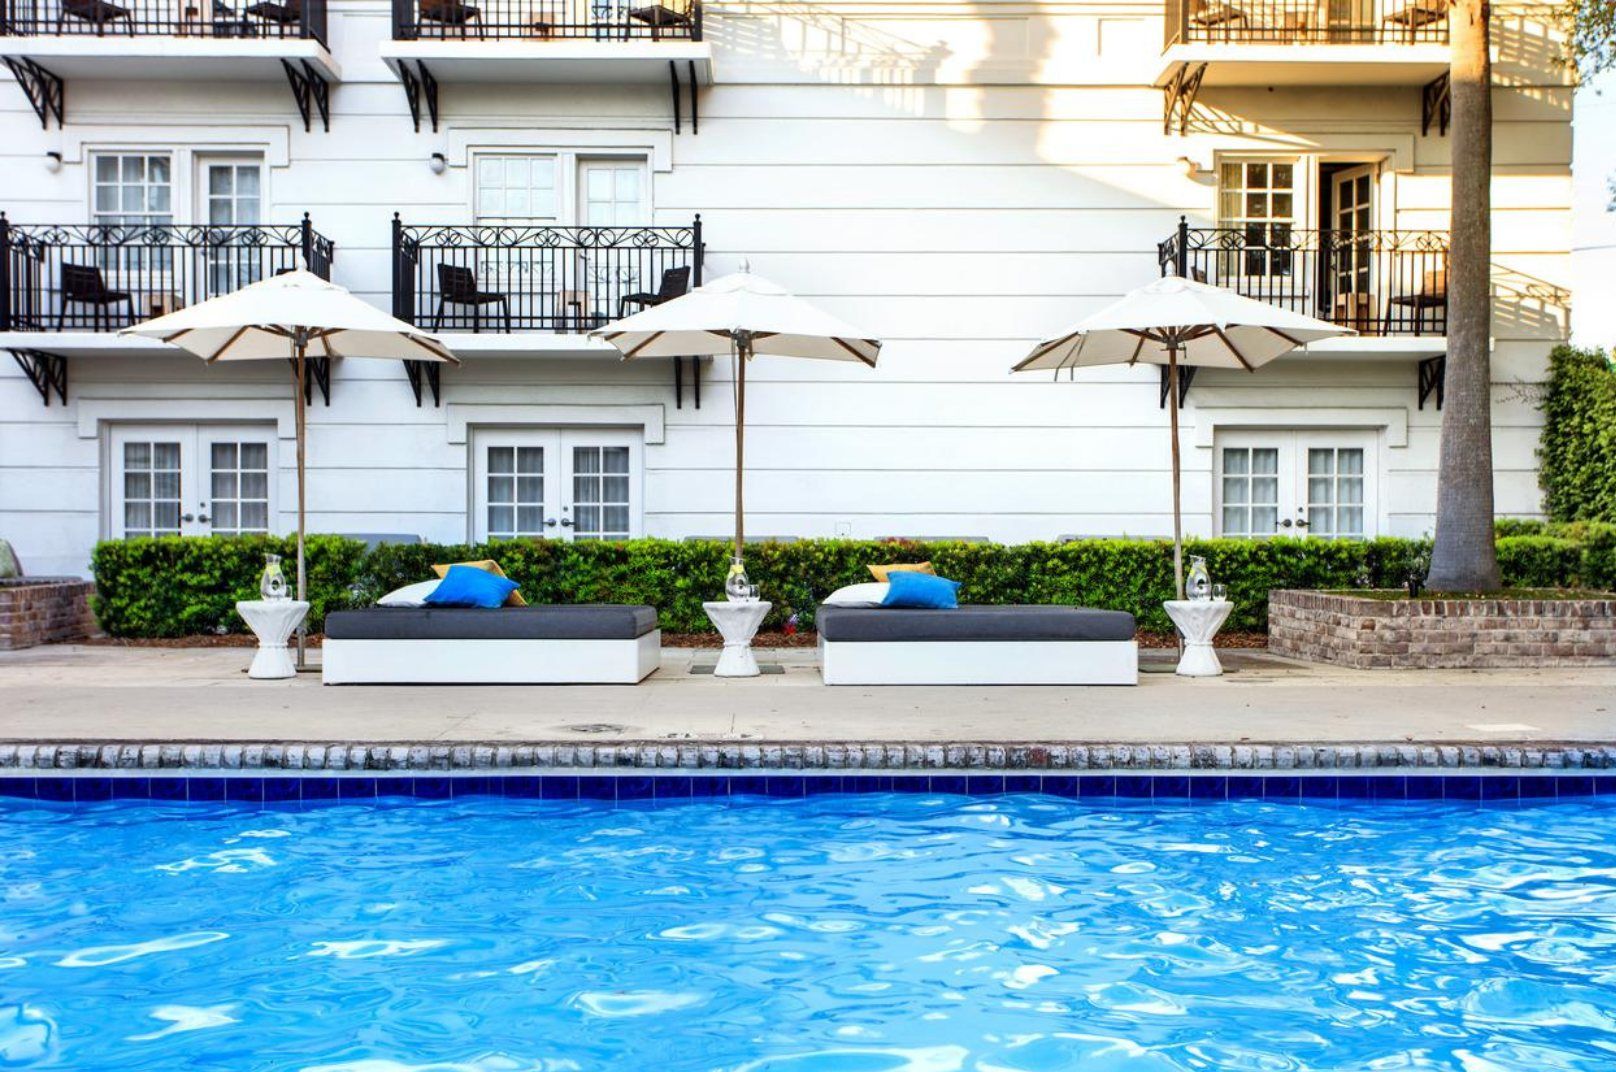 Luxury Hotels in Savannah GA